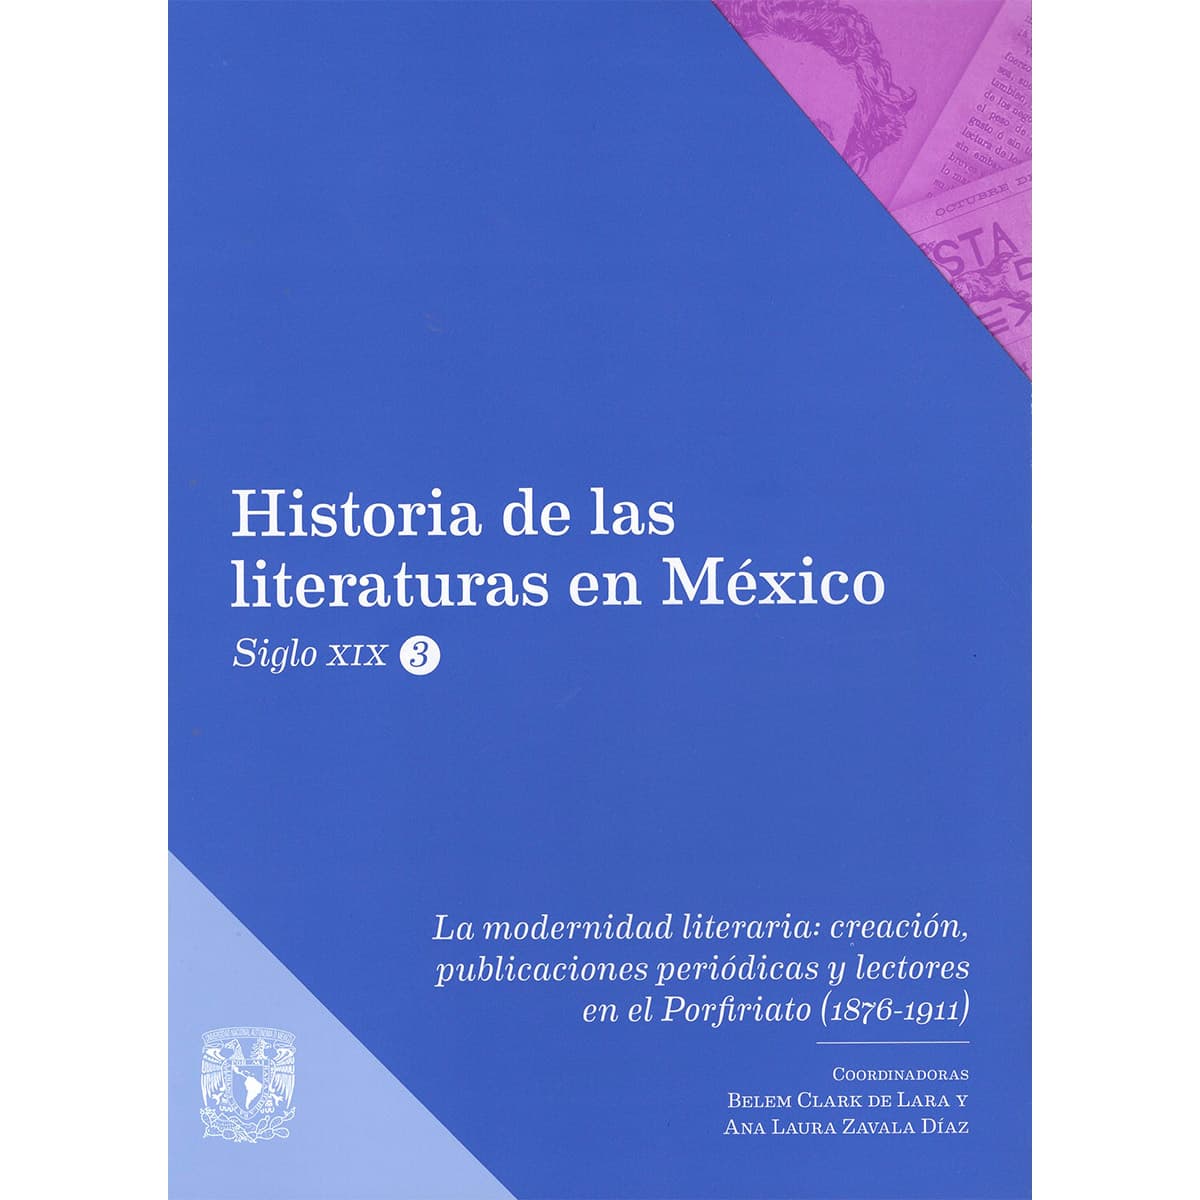 LA MODERNIDAD LITERARIA: CREACIÓN, PUBLICACIONES PERIÓDICAS Y LECTORES EN EL PORFIRIATO (1876-1911)